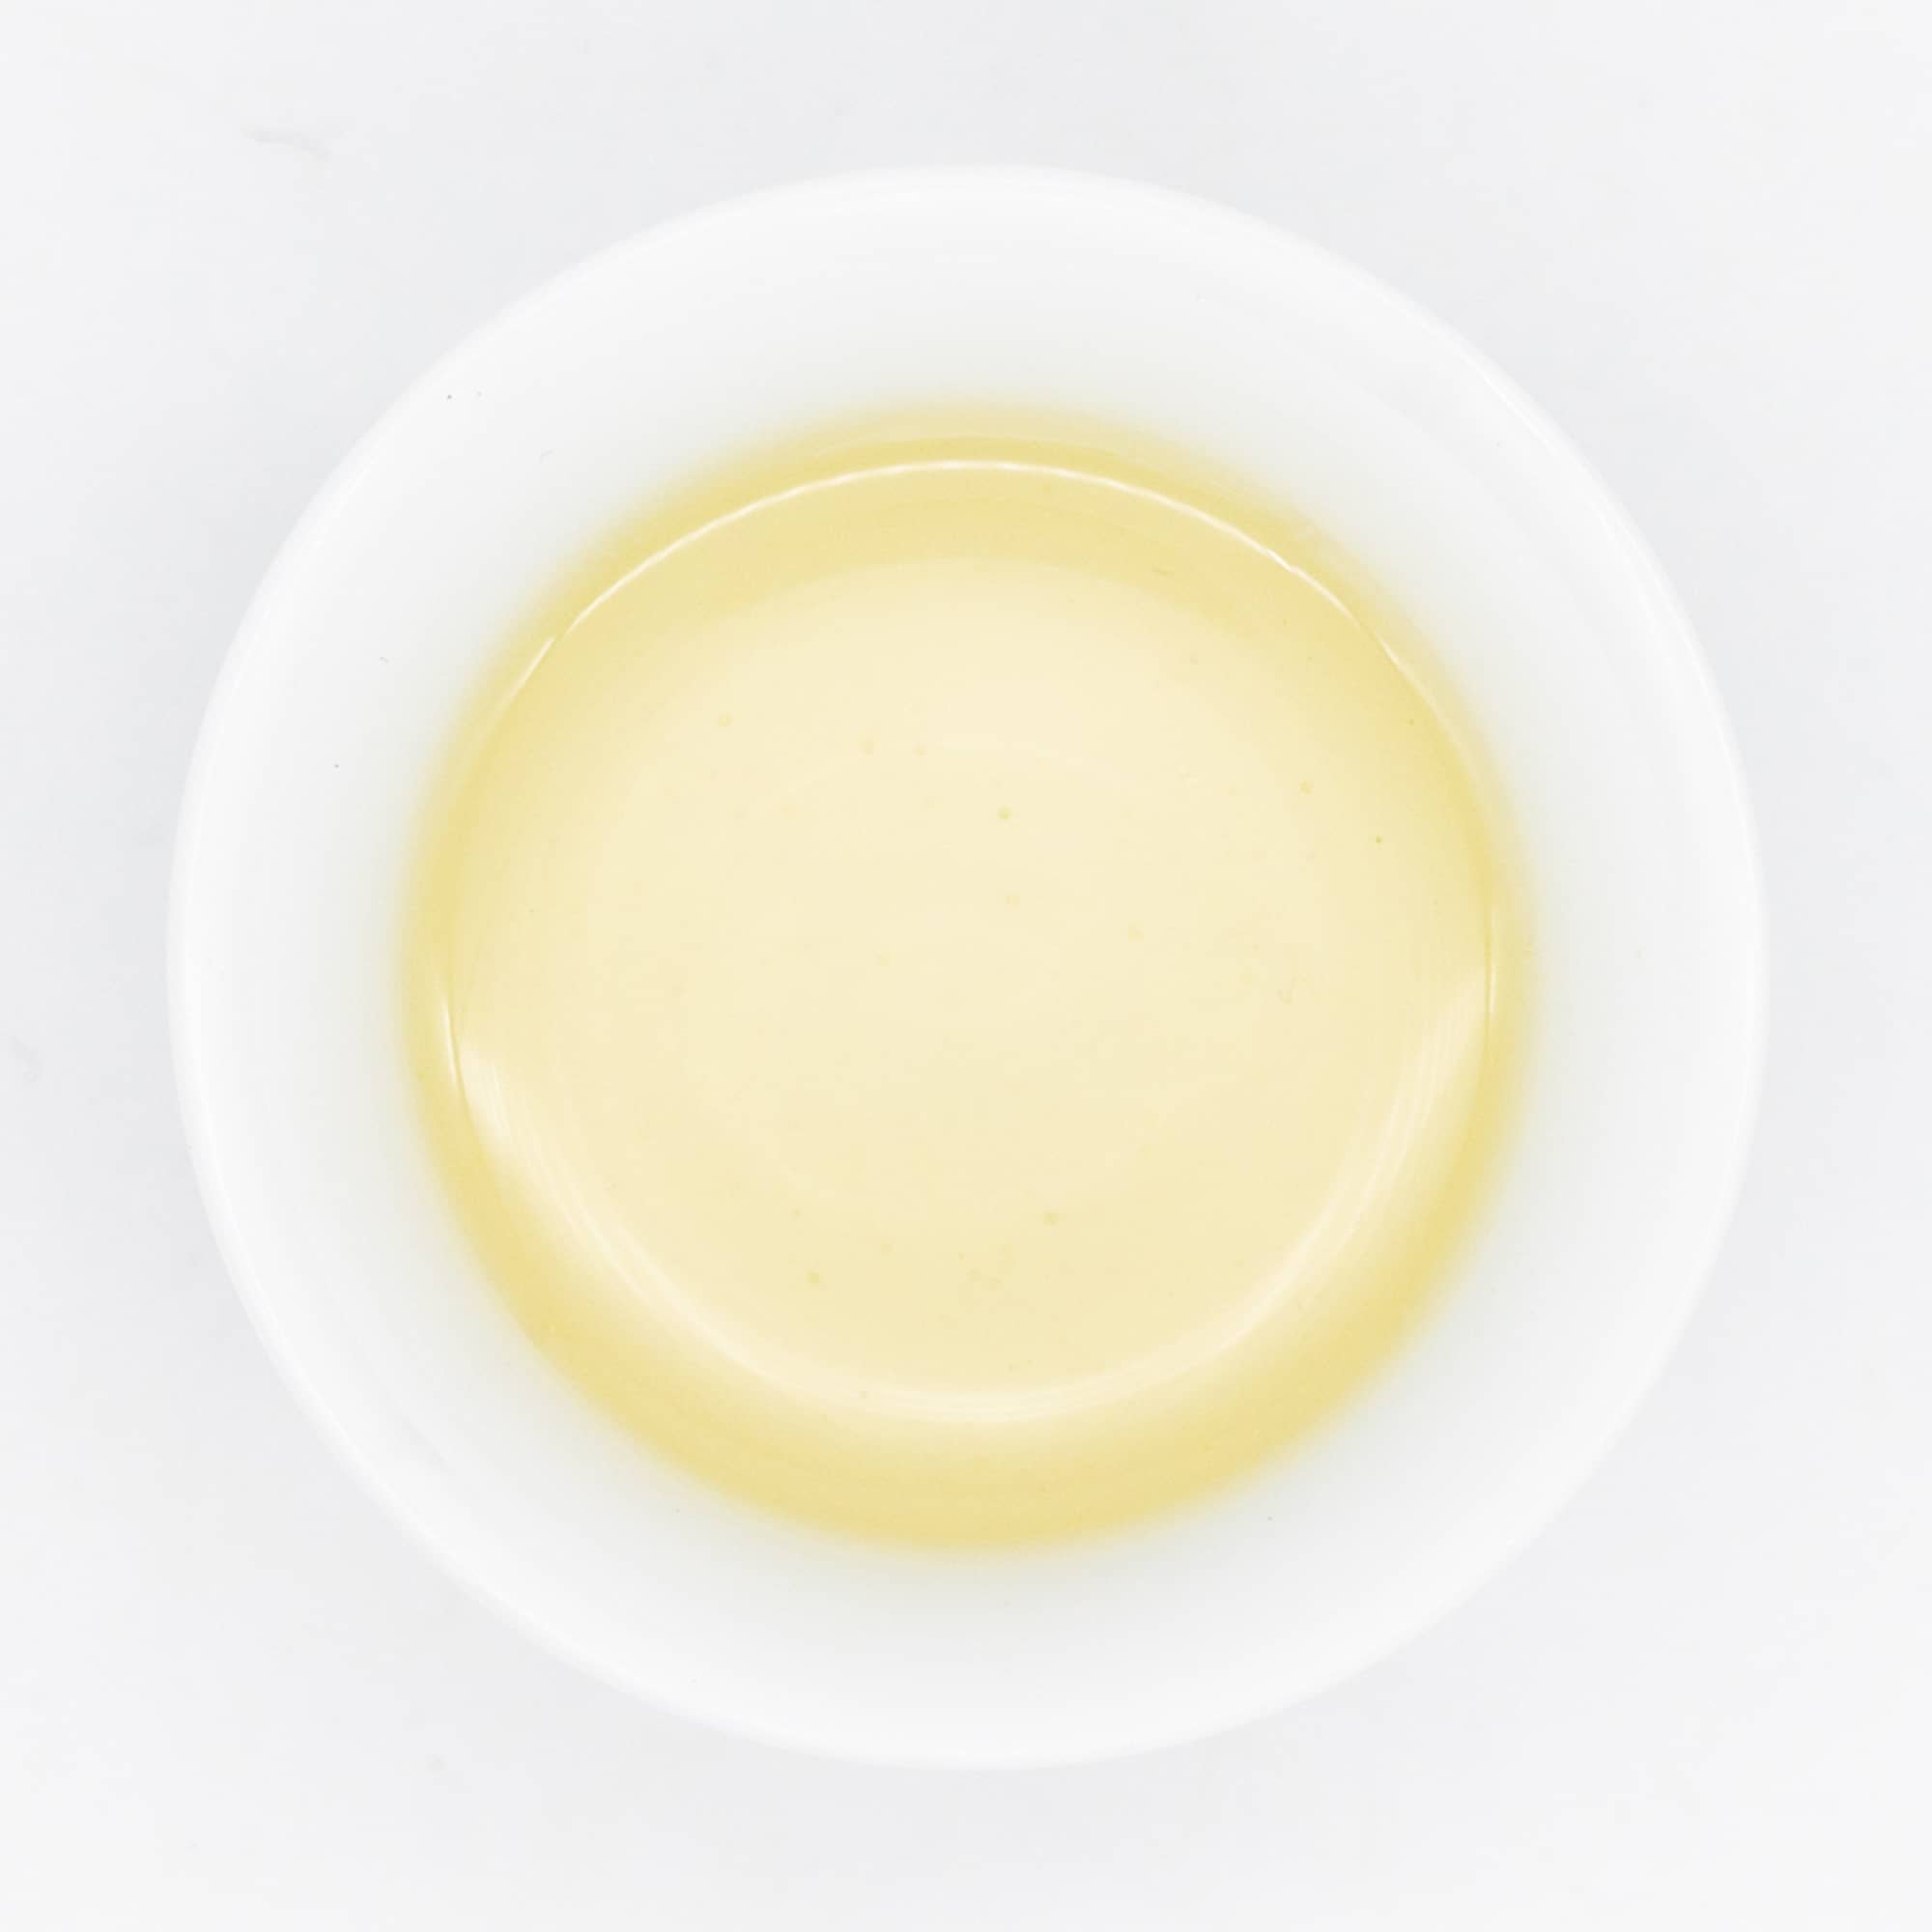 Wazuka Premium Zairai White Tea